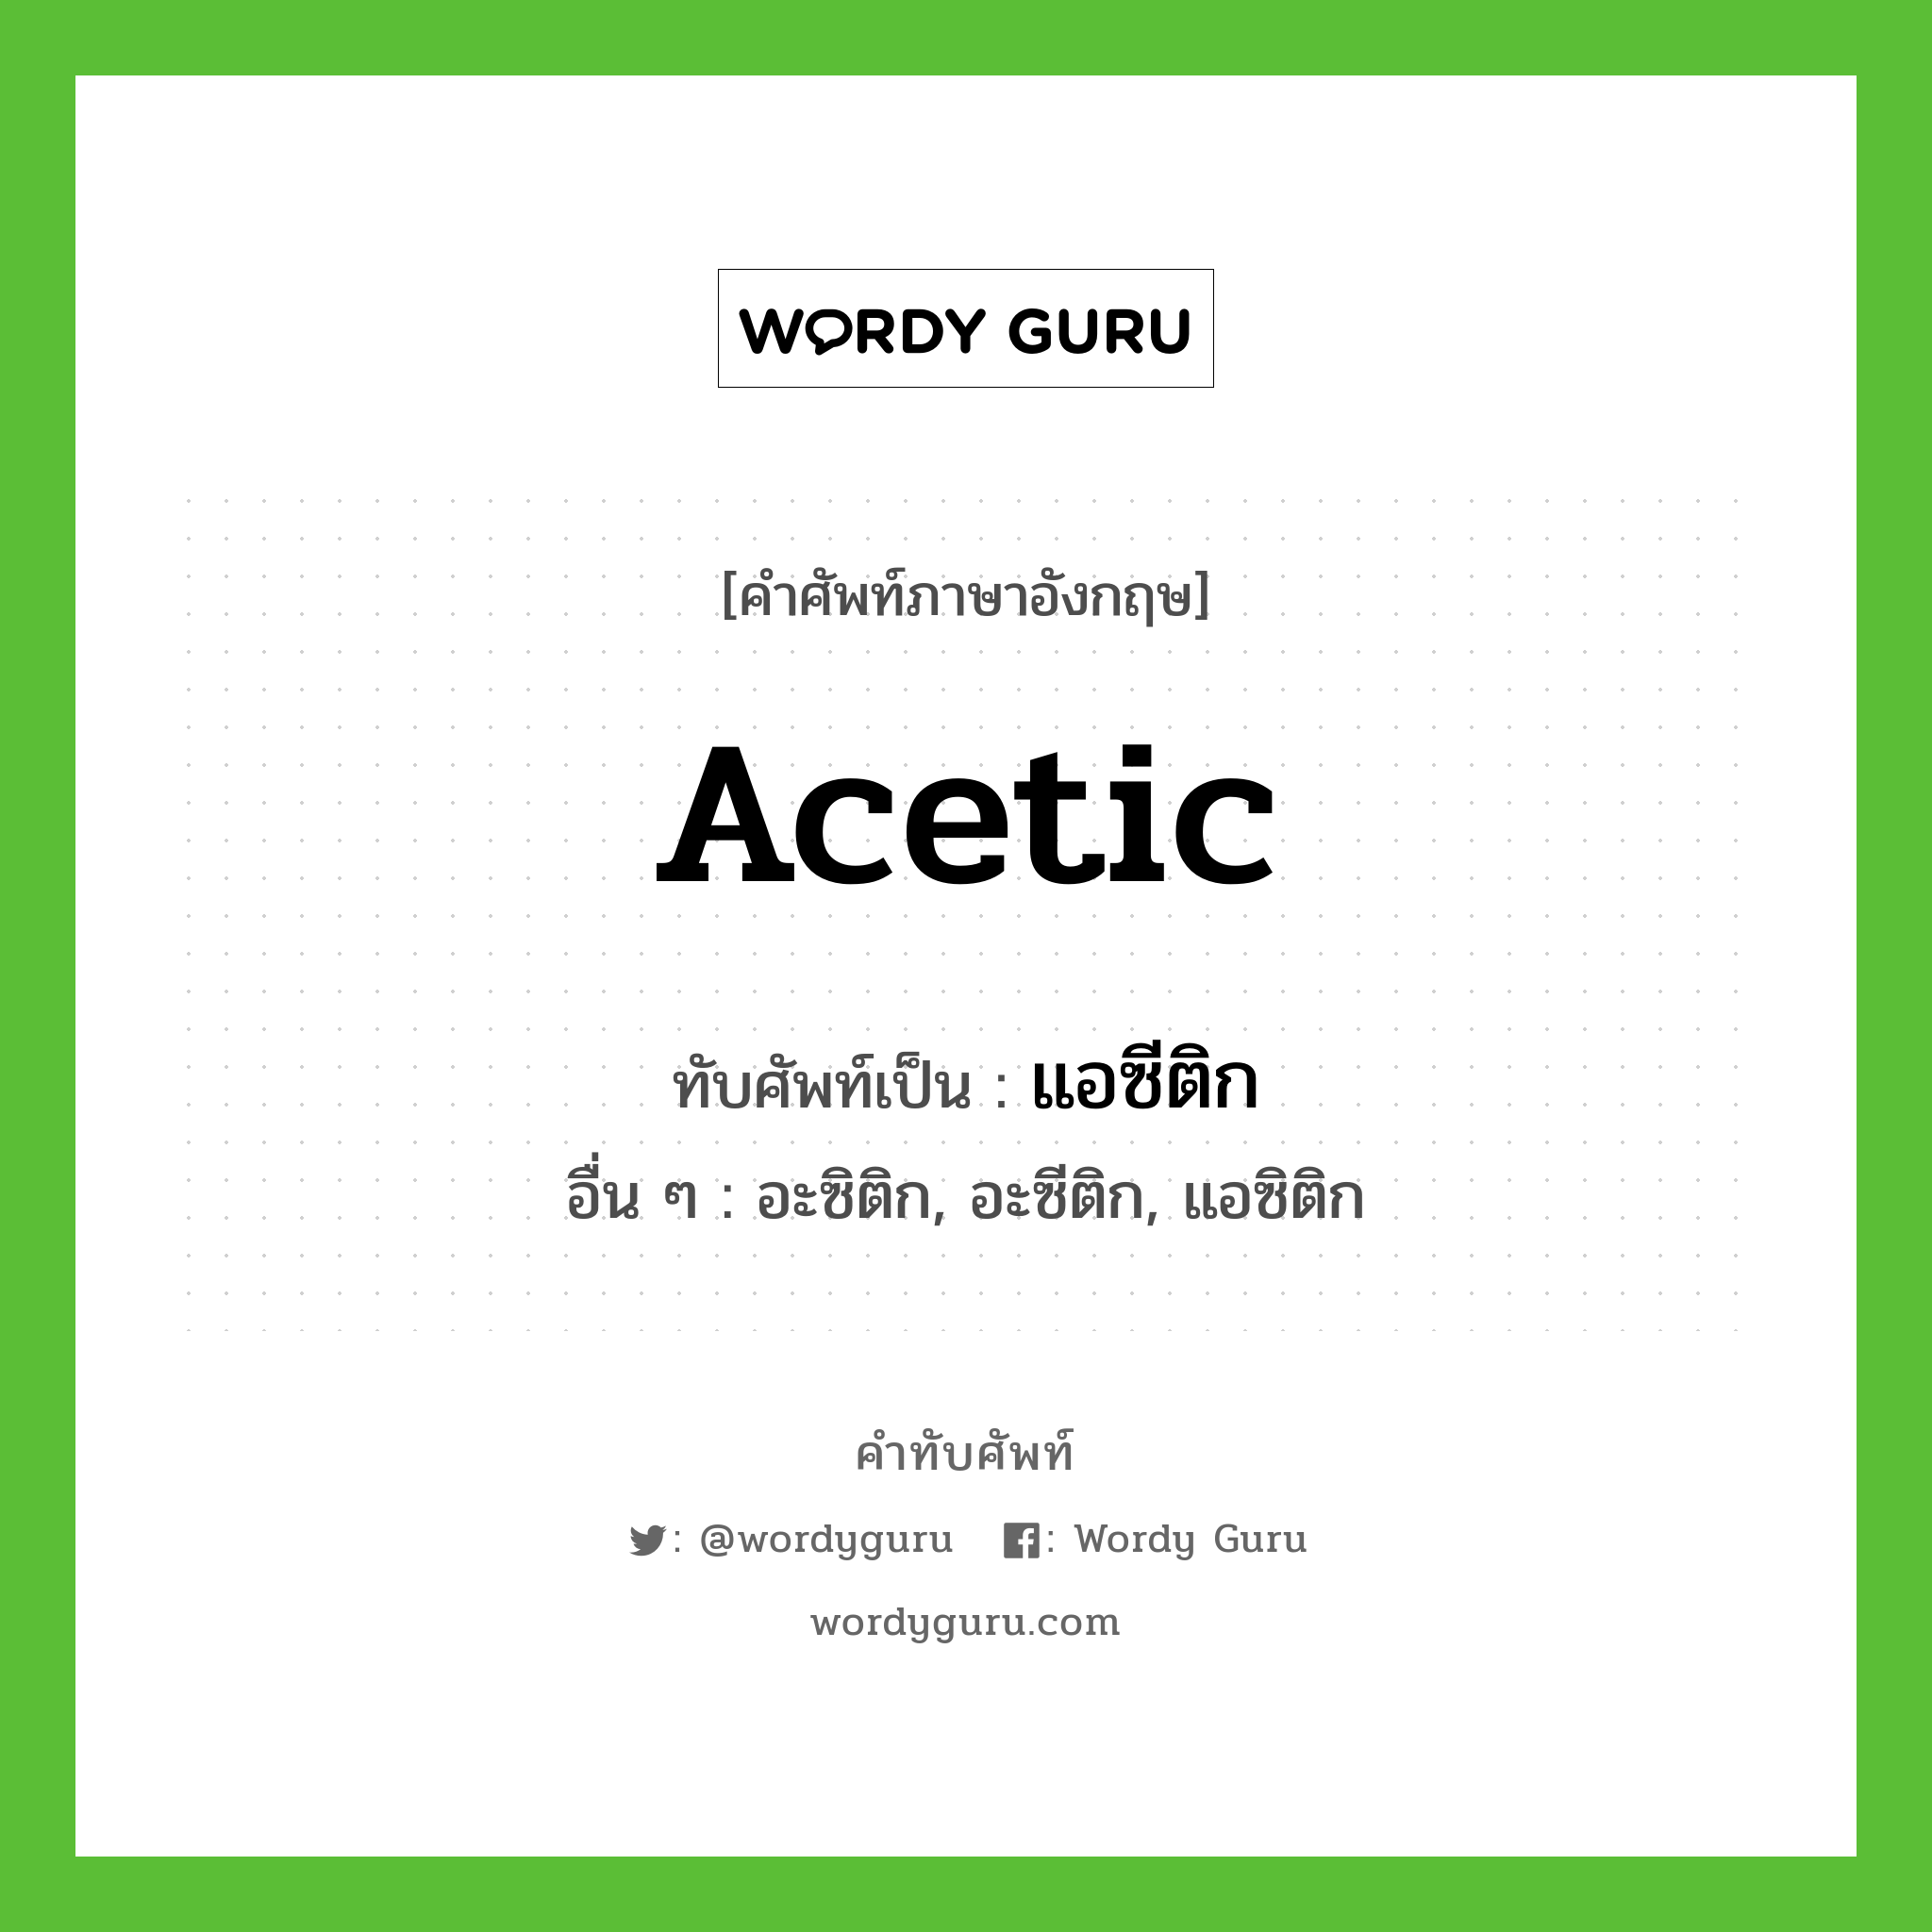 acetic เขียนเป็นคำไทยว่าอะไร?, คำศัพท์ภาษาอังกฤษ acetic ทับศัพท์เป็น แอซีติก อื่น ๆ อะซิติก, อะซีติก, แอซิติก